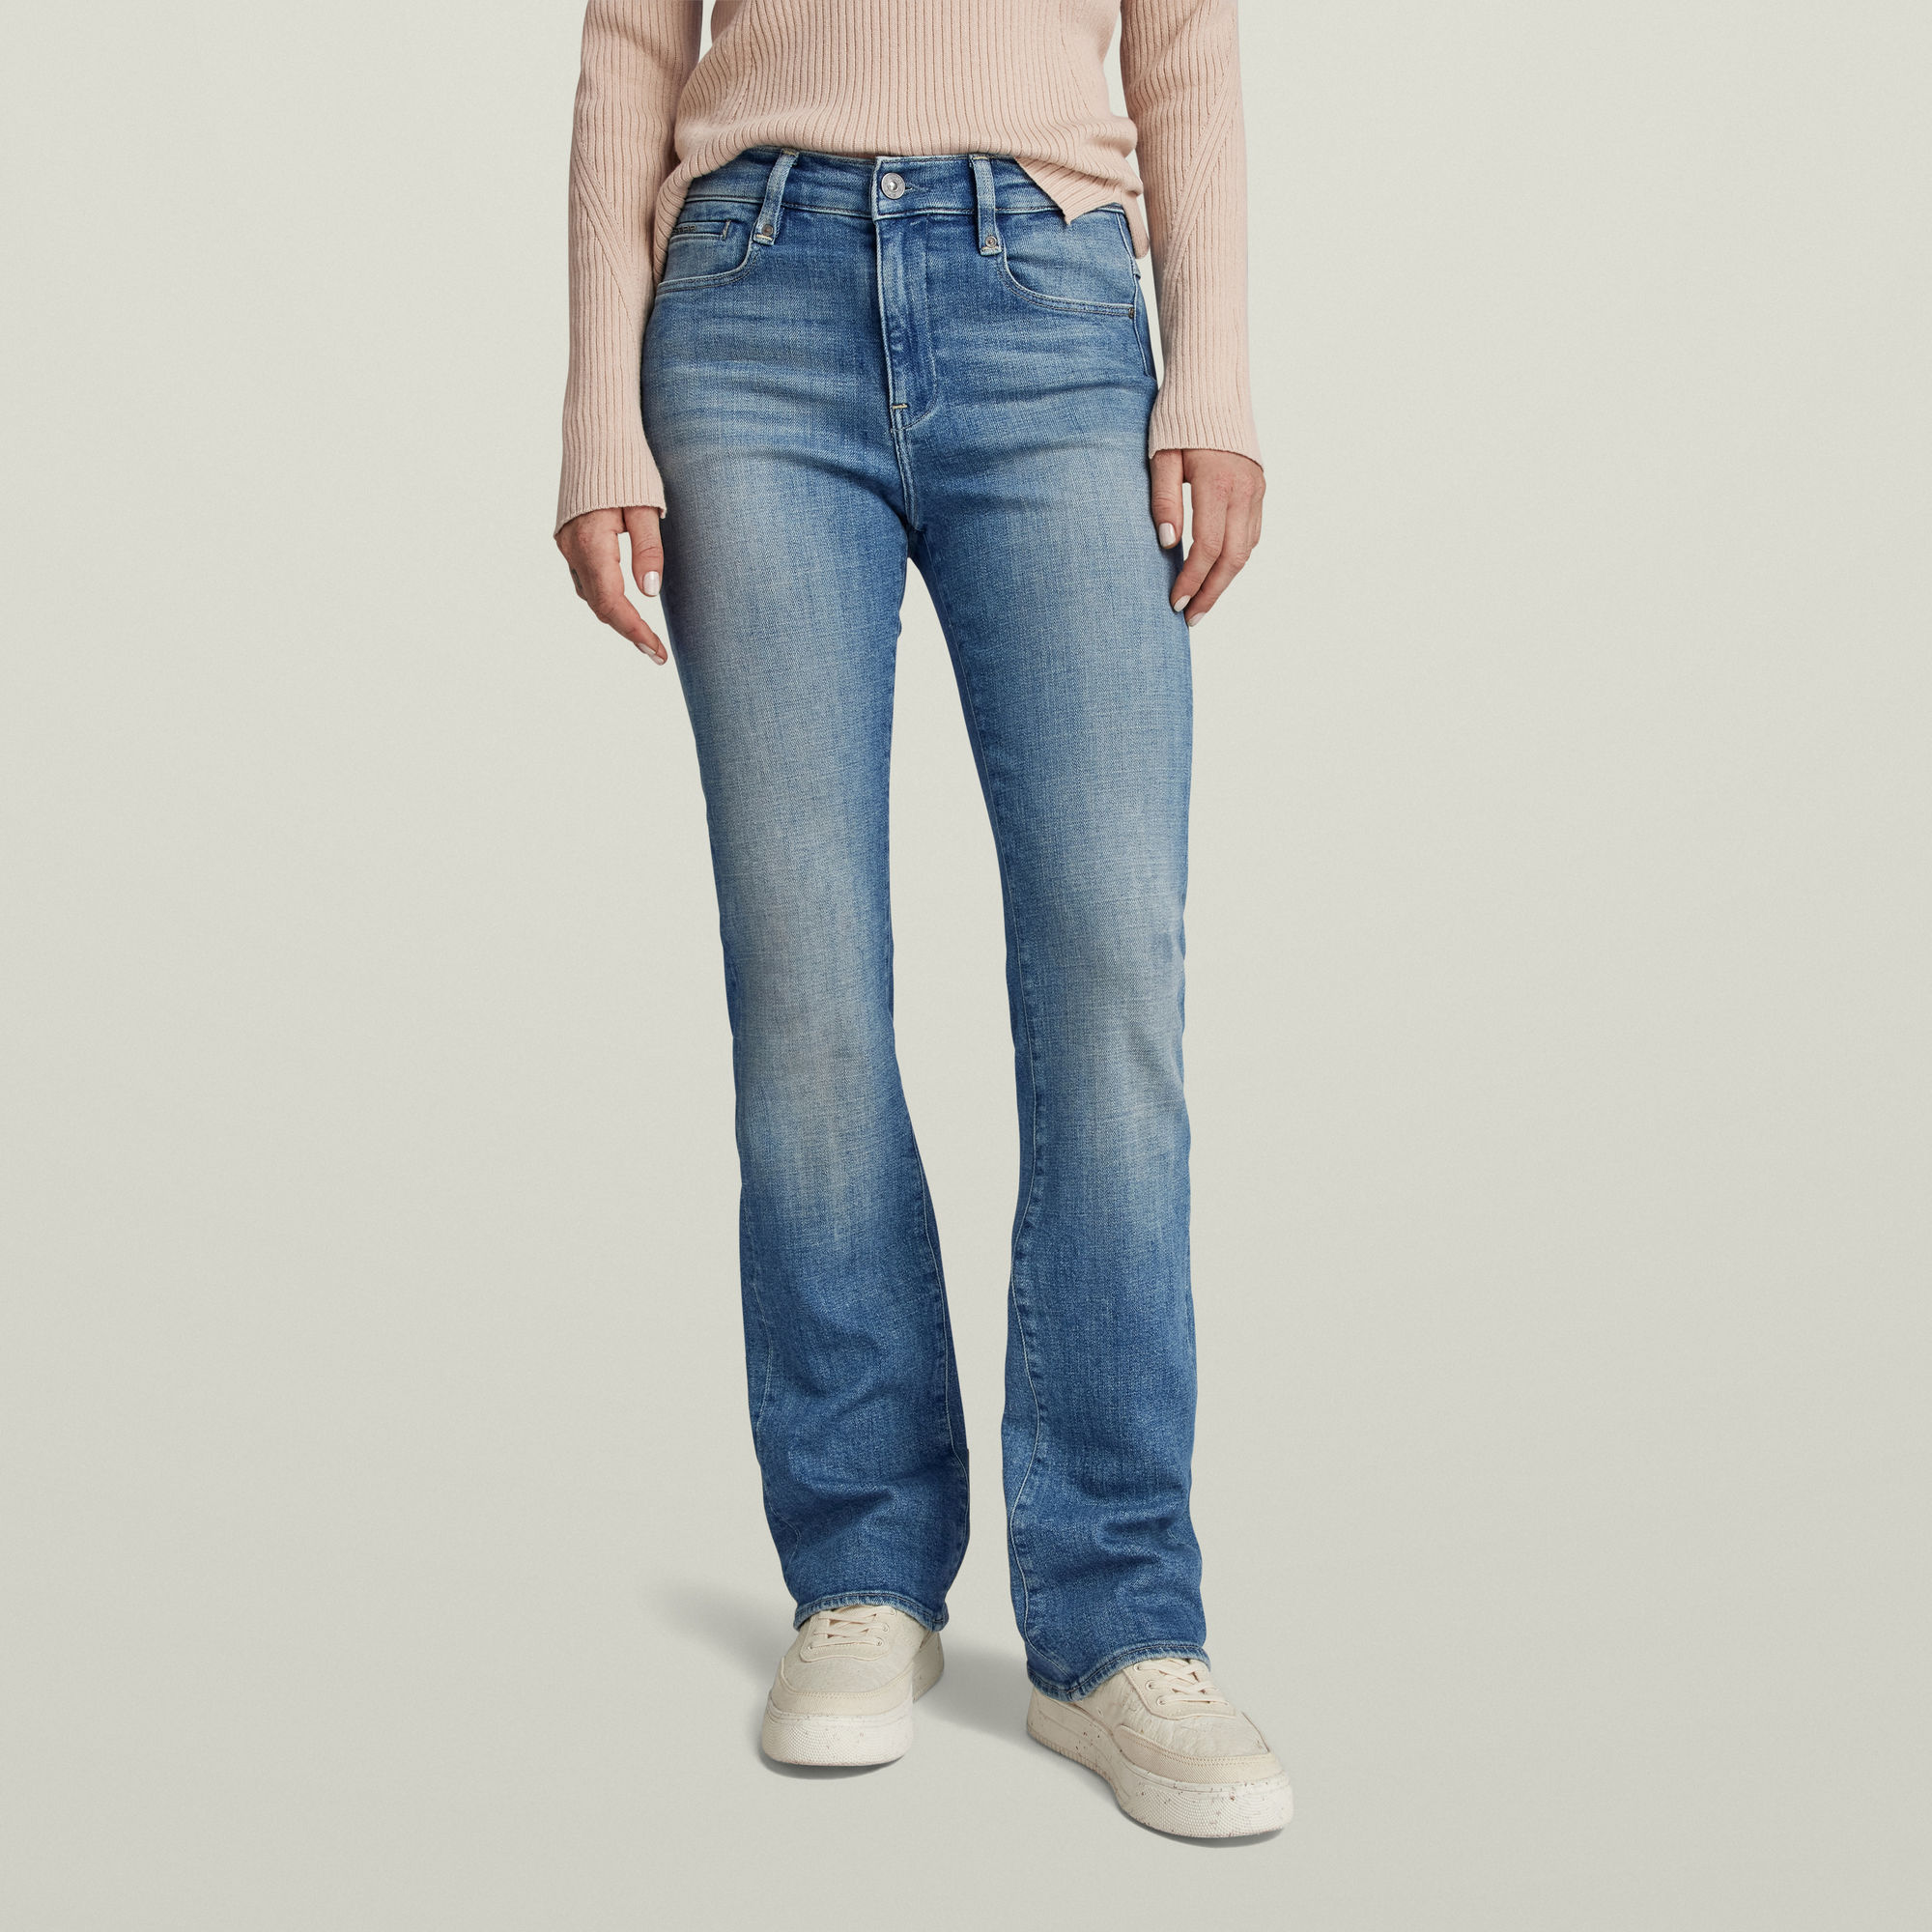 

Noxer Bootcut Jeans - Medium blue - Women